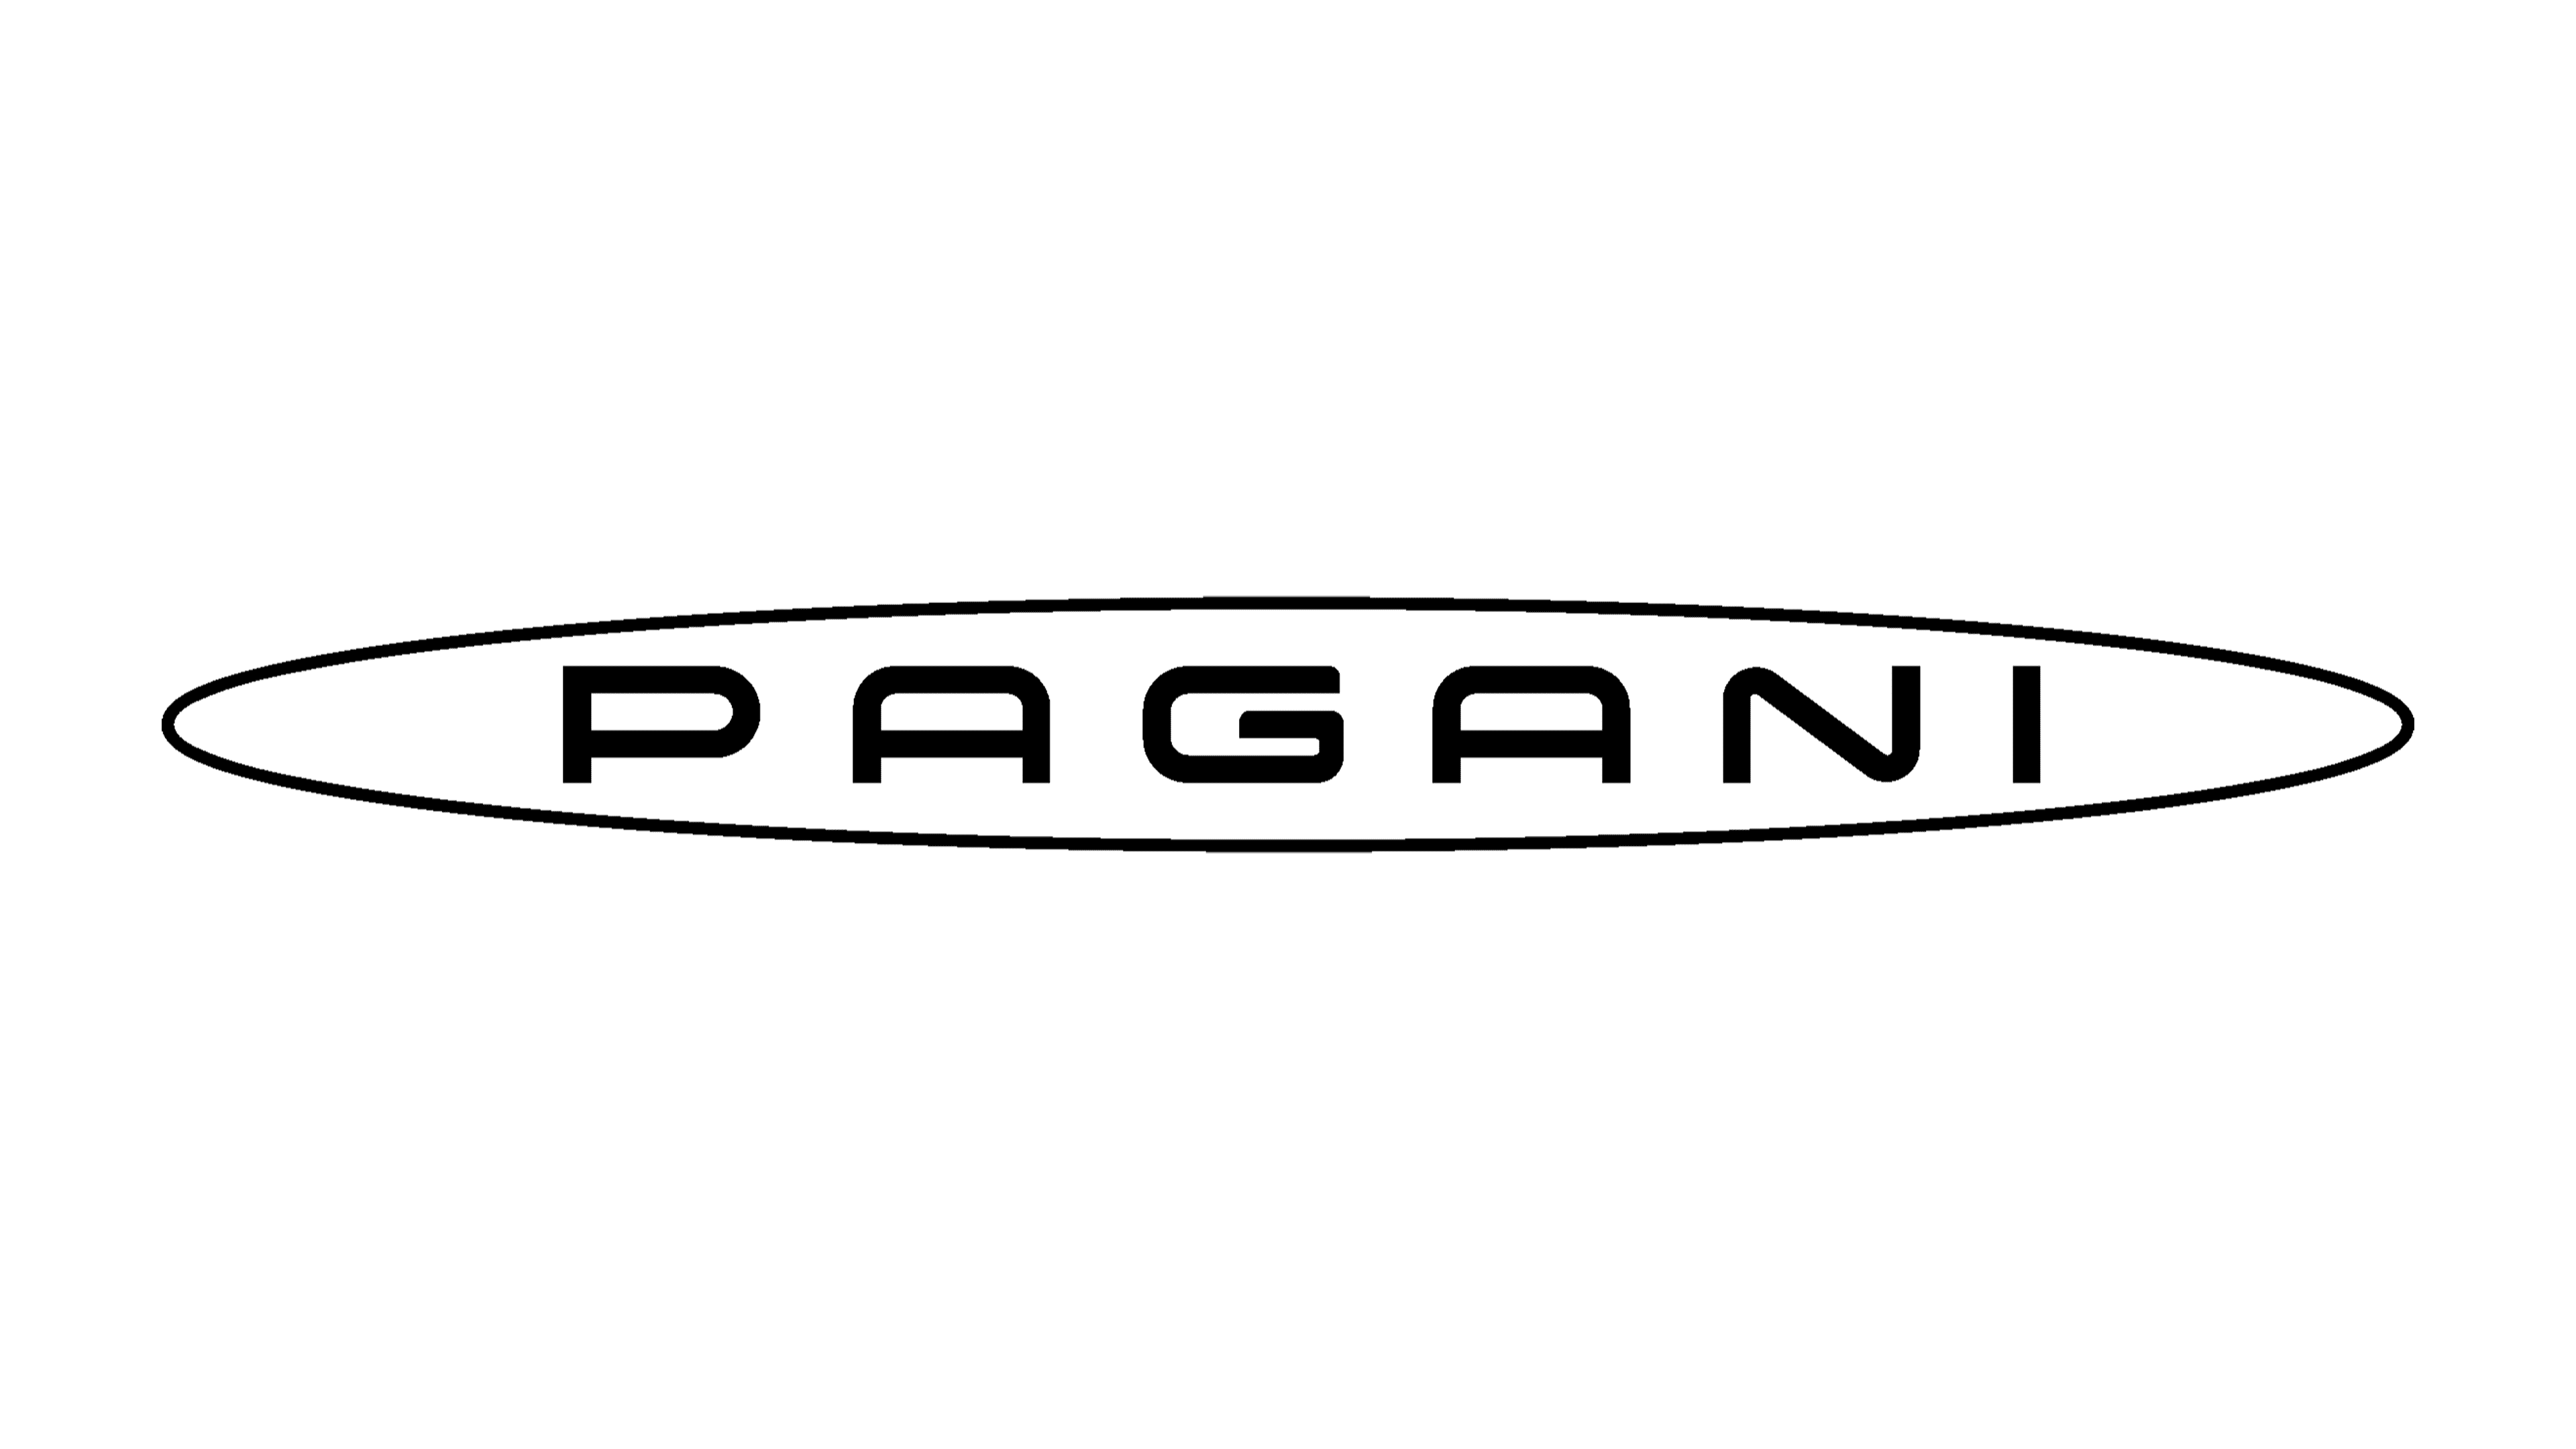 PAGANI LED WALL LIGHT UP GARAGE SIGN PETROL GASOLINE CAR LOGO ZONDA HUAYRA  BC | eBay